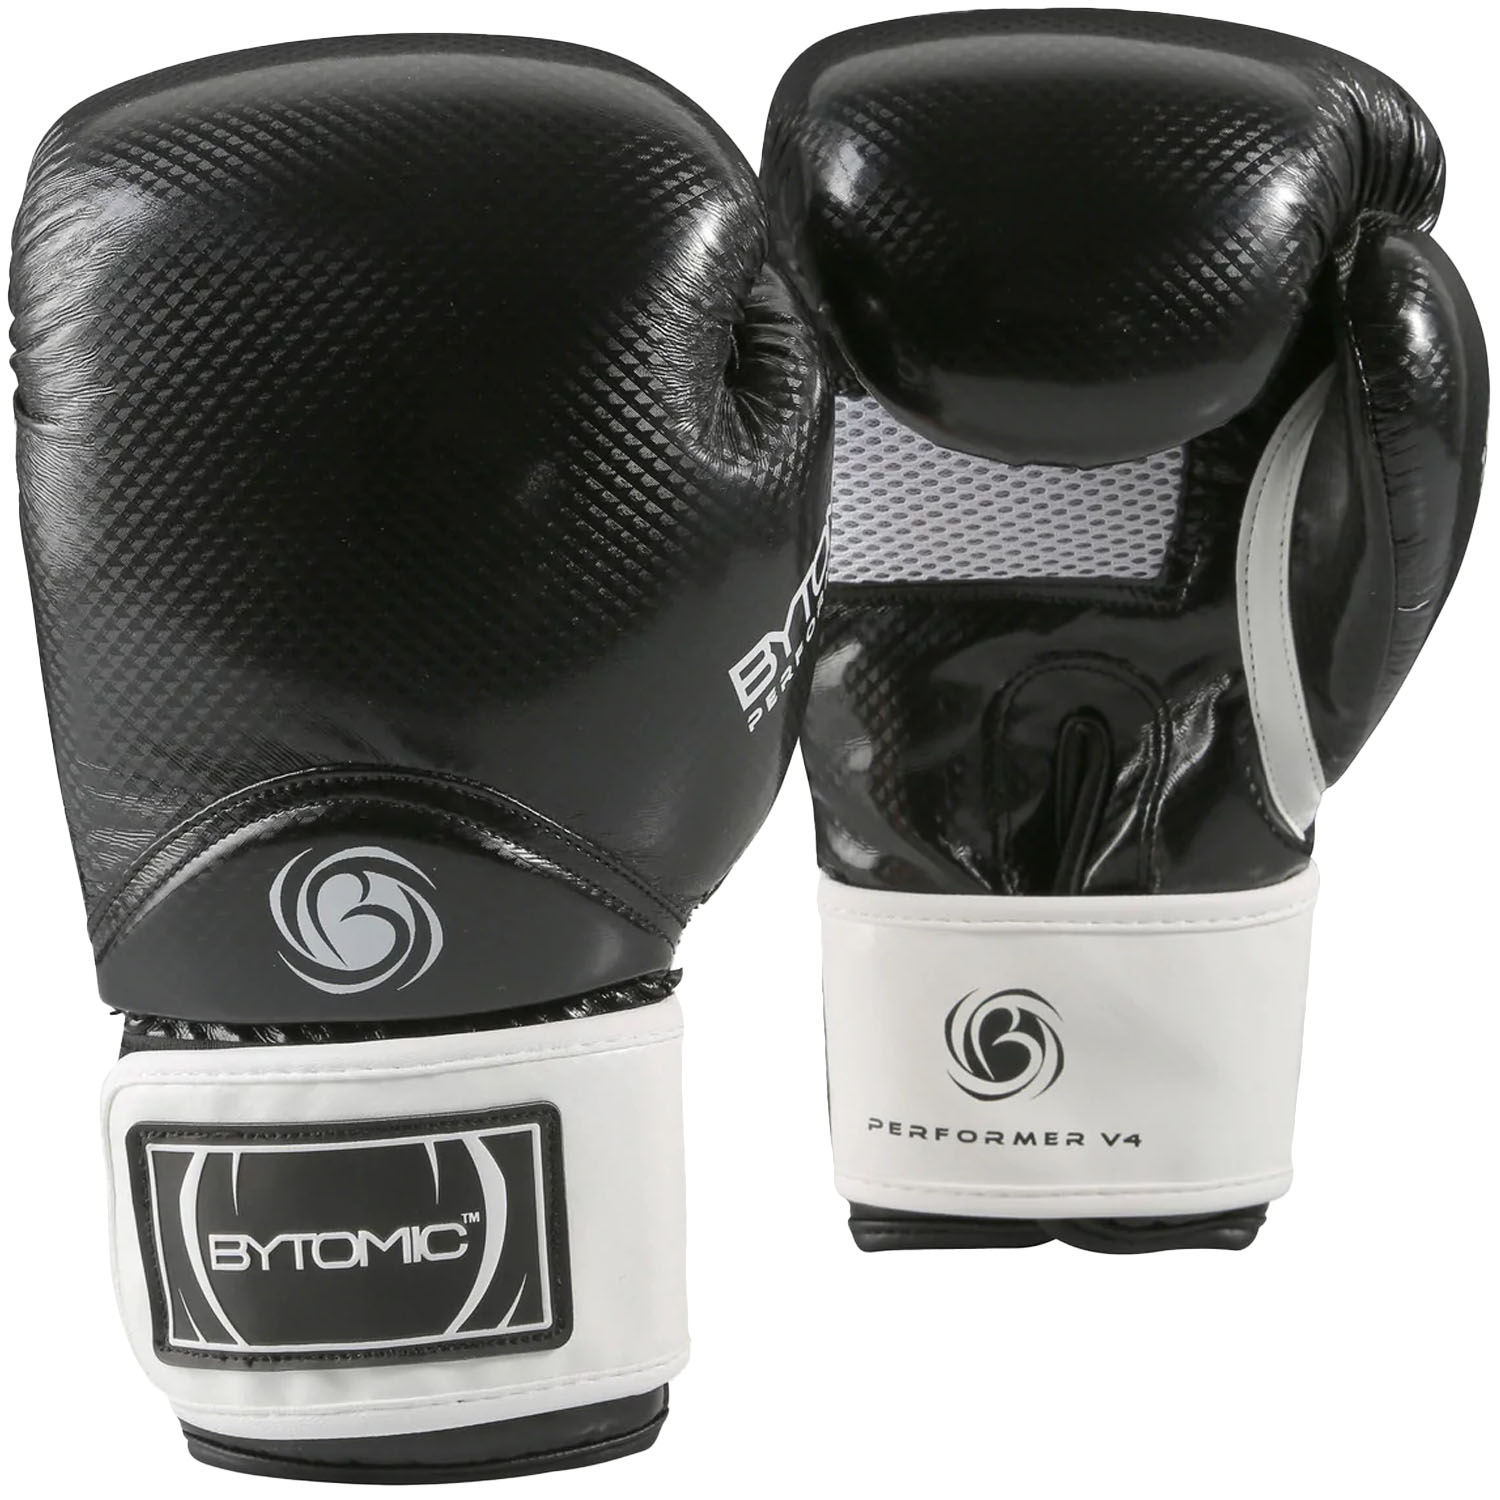 Bytomic Boxing Gloves, Performer, V4, black-white, 10 Oz